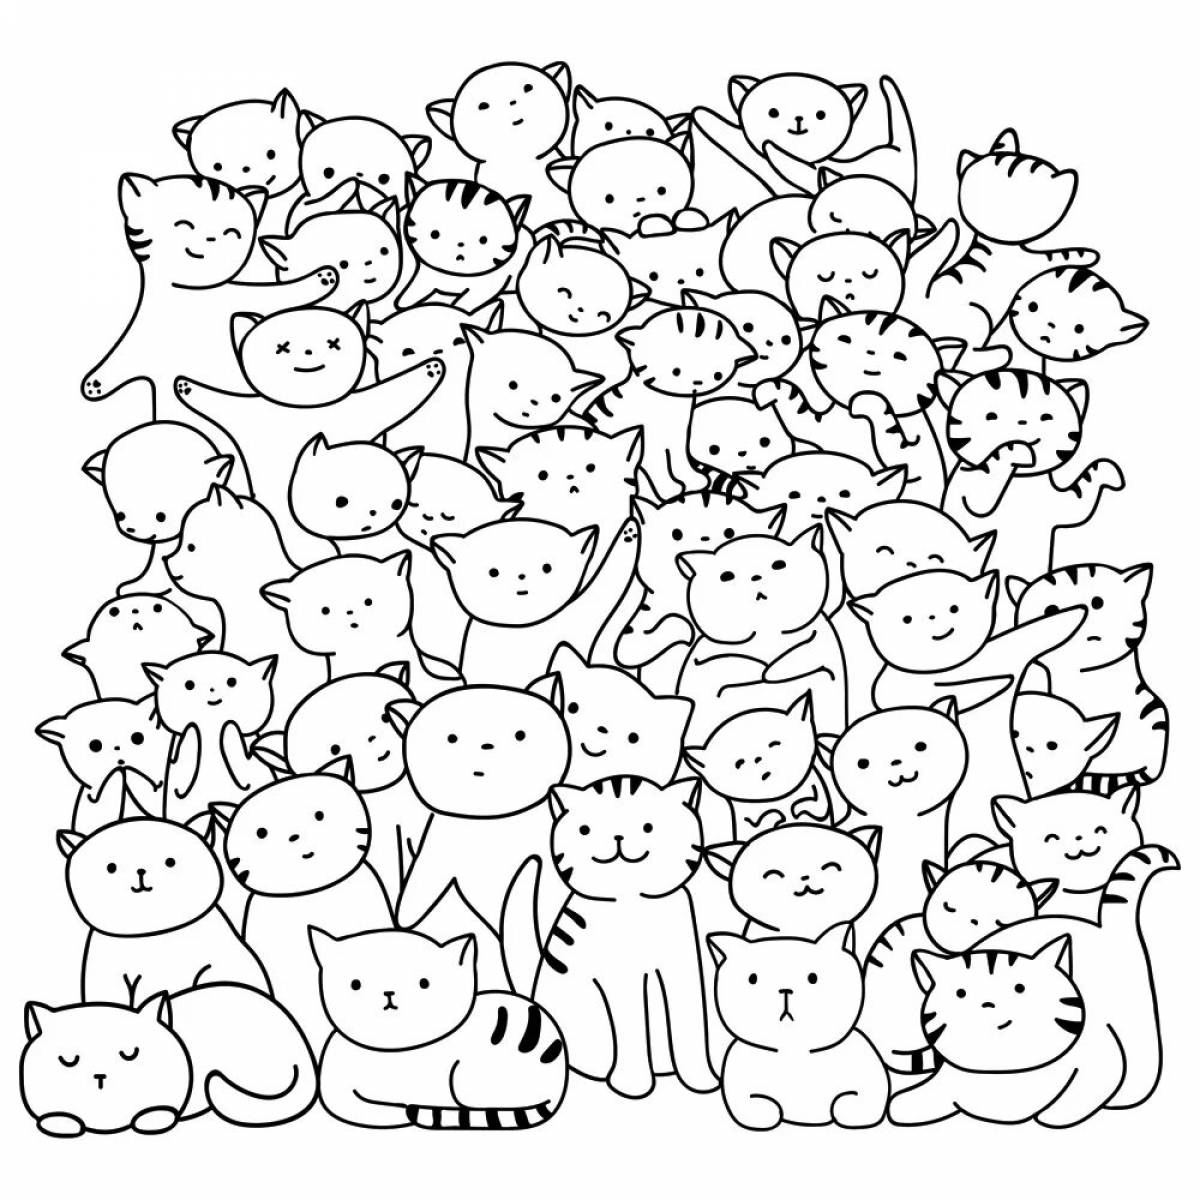 Many cats #1